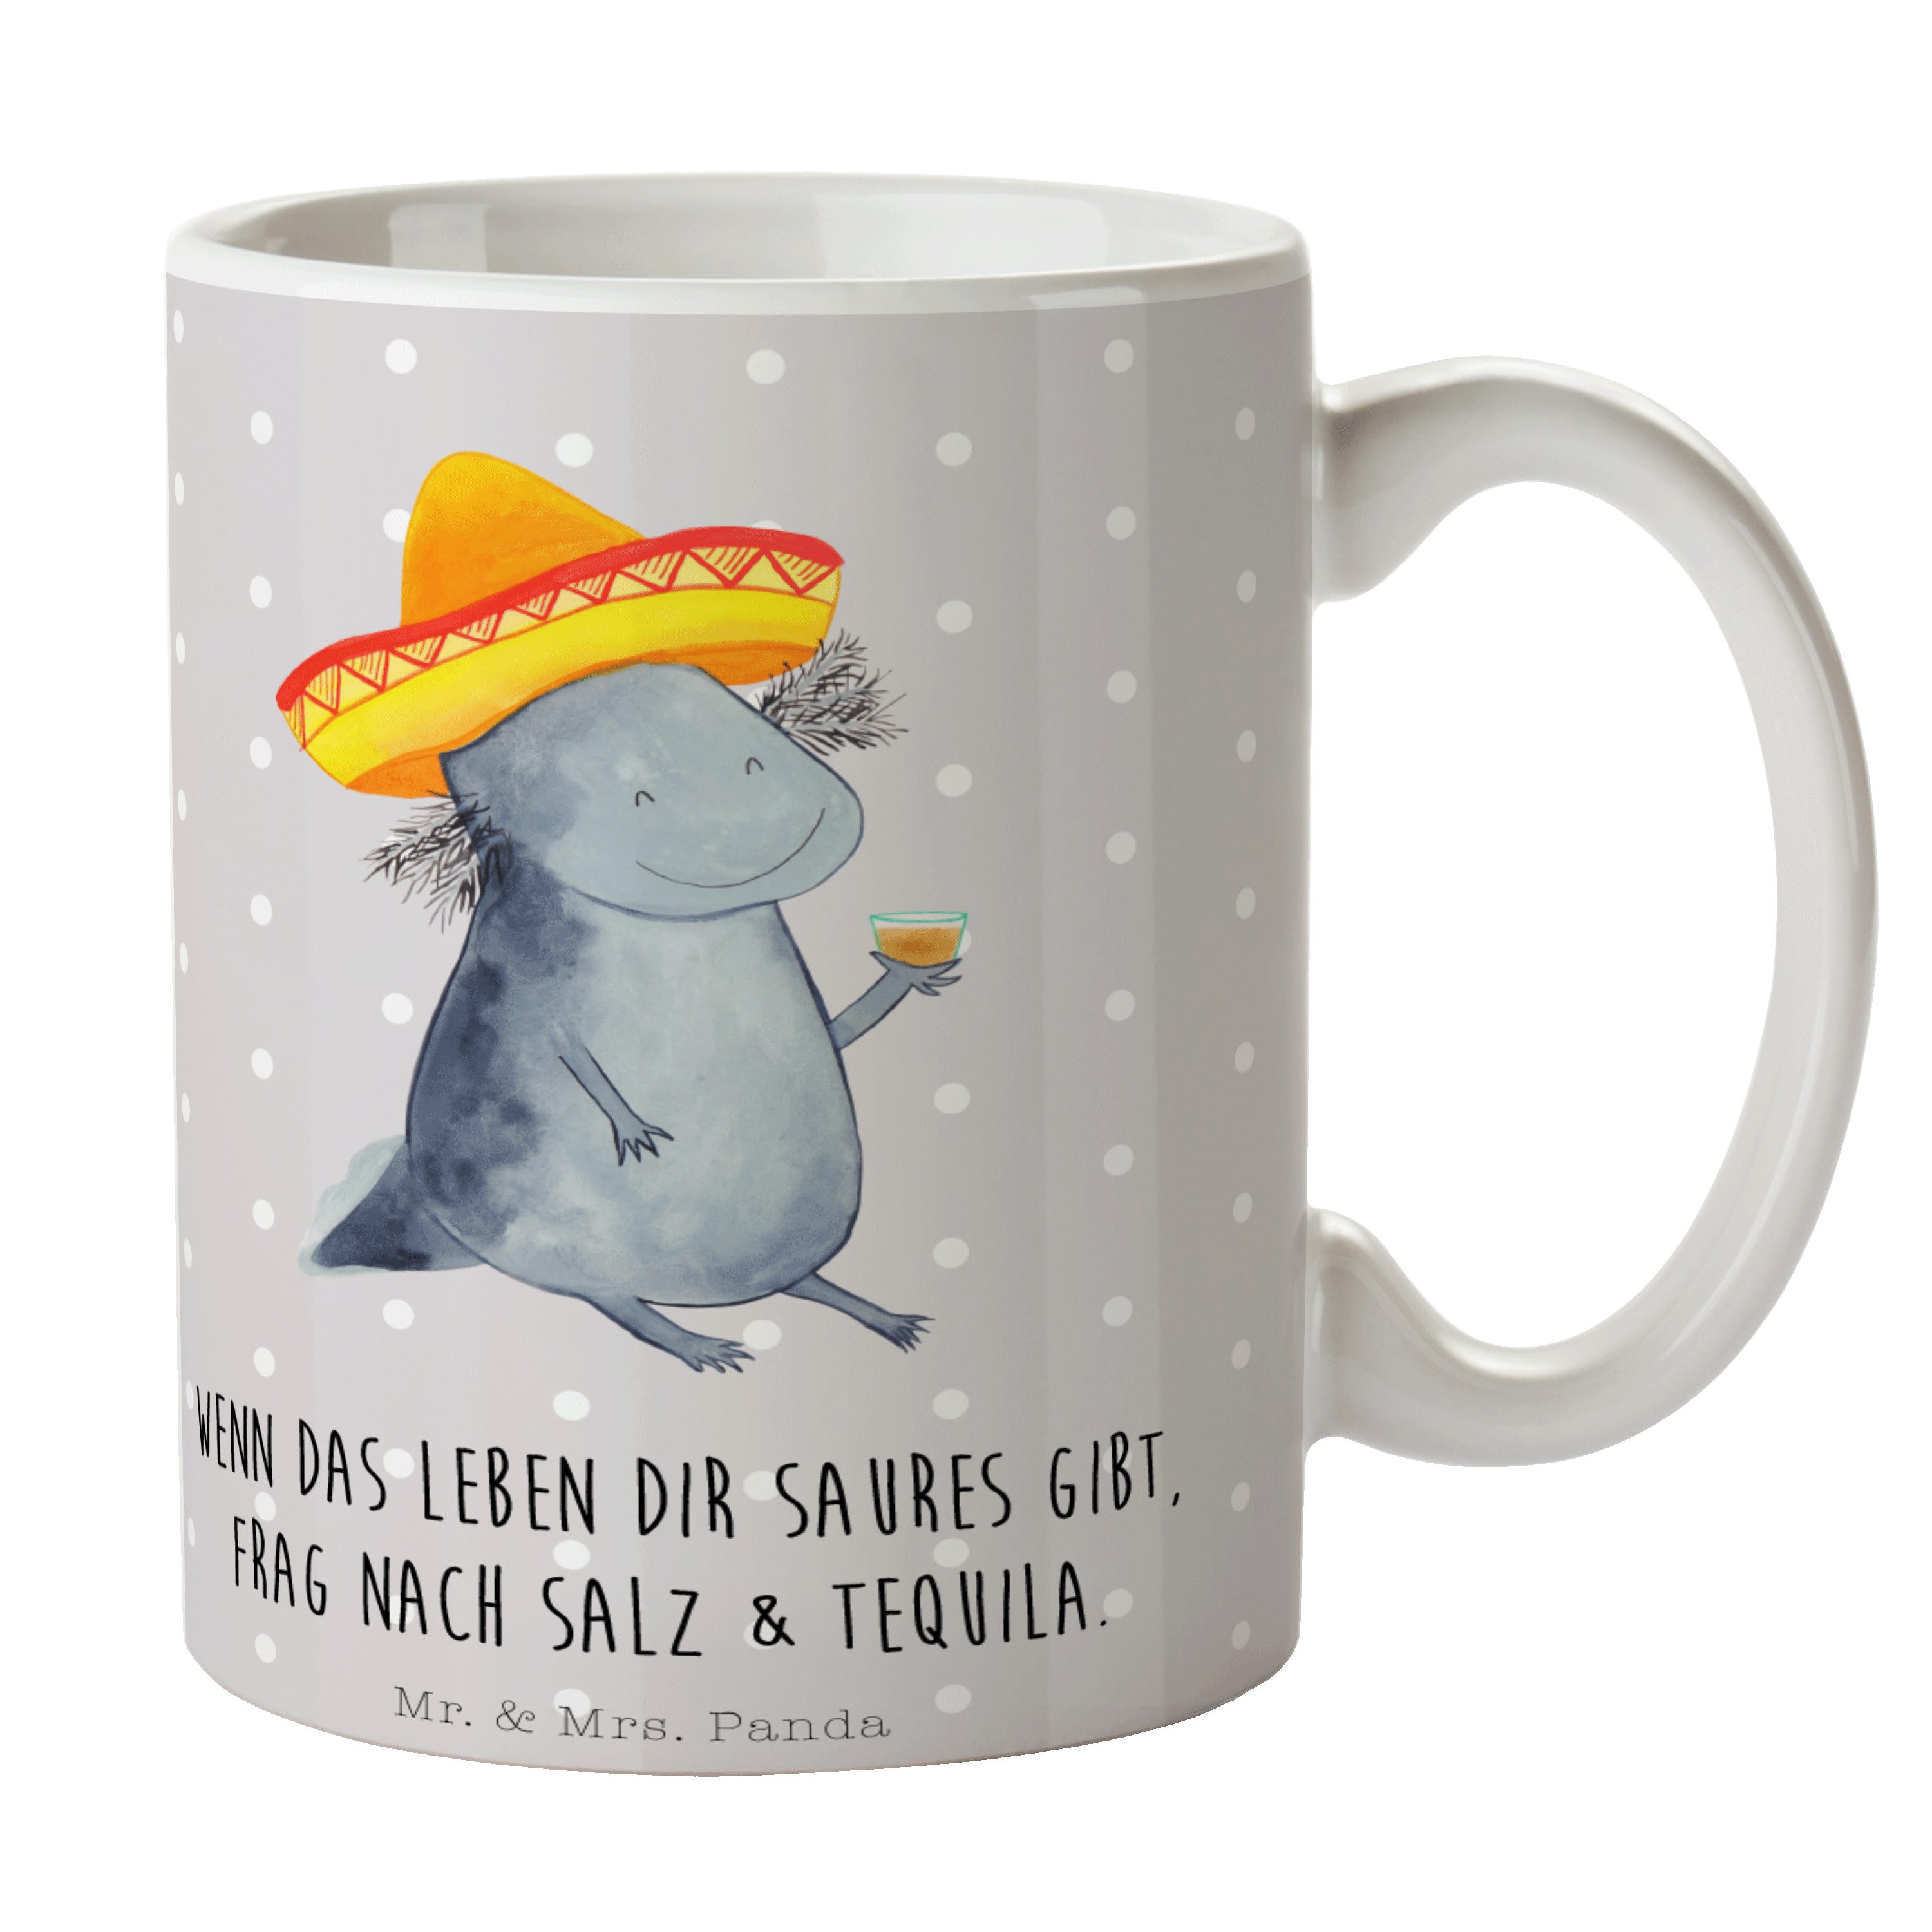 Kaffeebecher, Keramik Tasse Becher, Panda Geschenk, - & Tequila Molc, Axolotl Mrs. - Mr. Grau Pastell